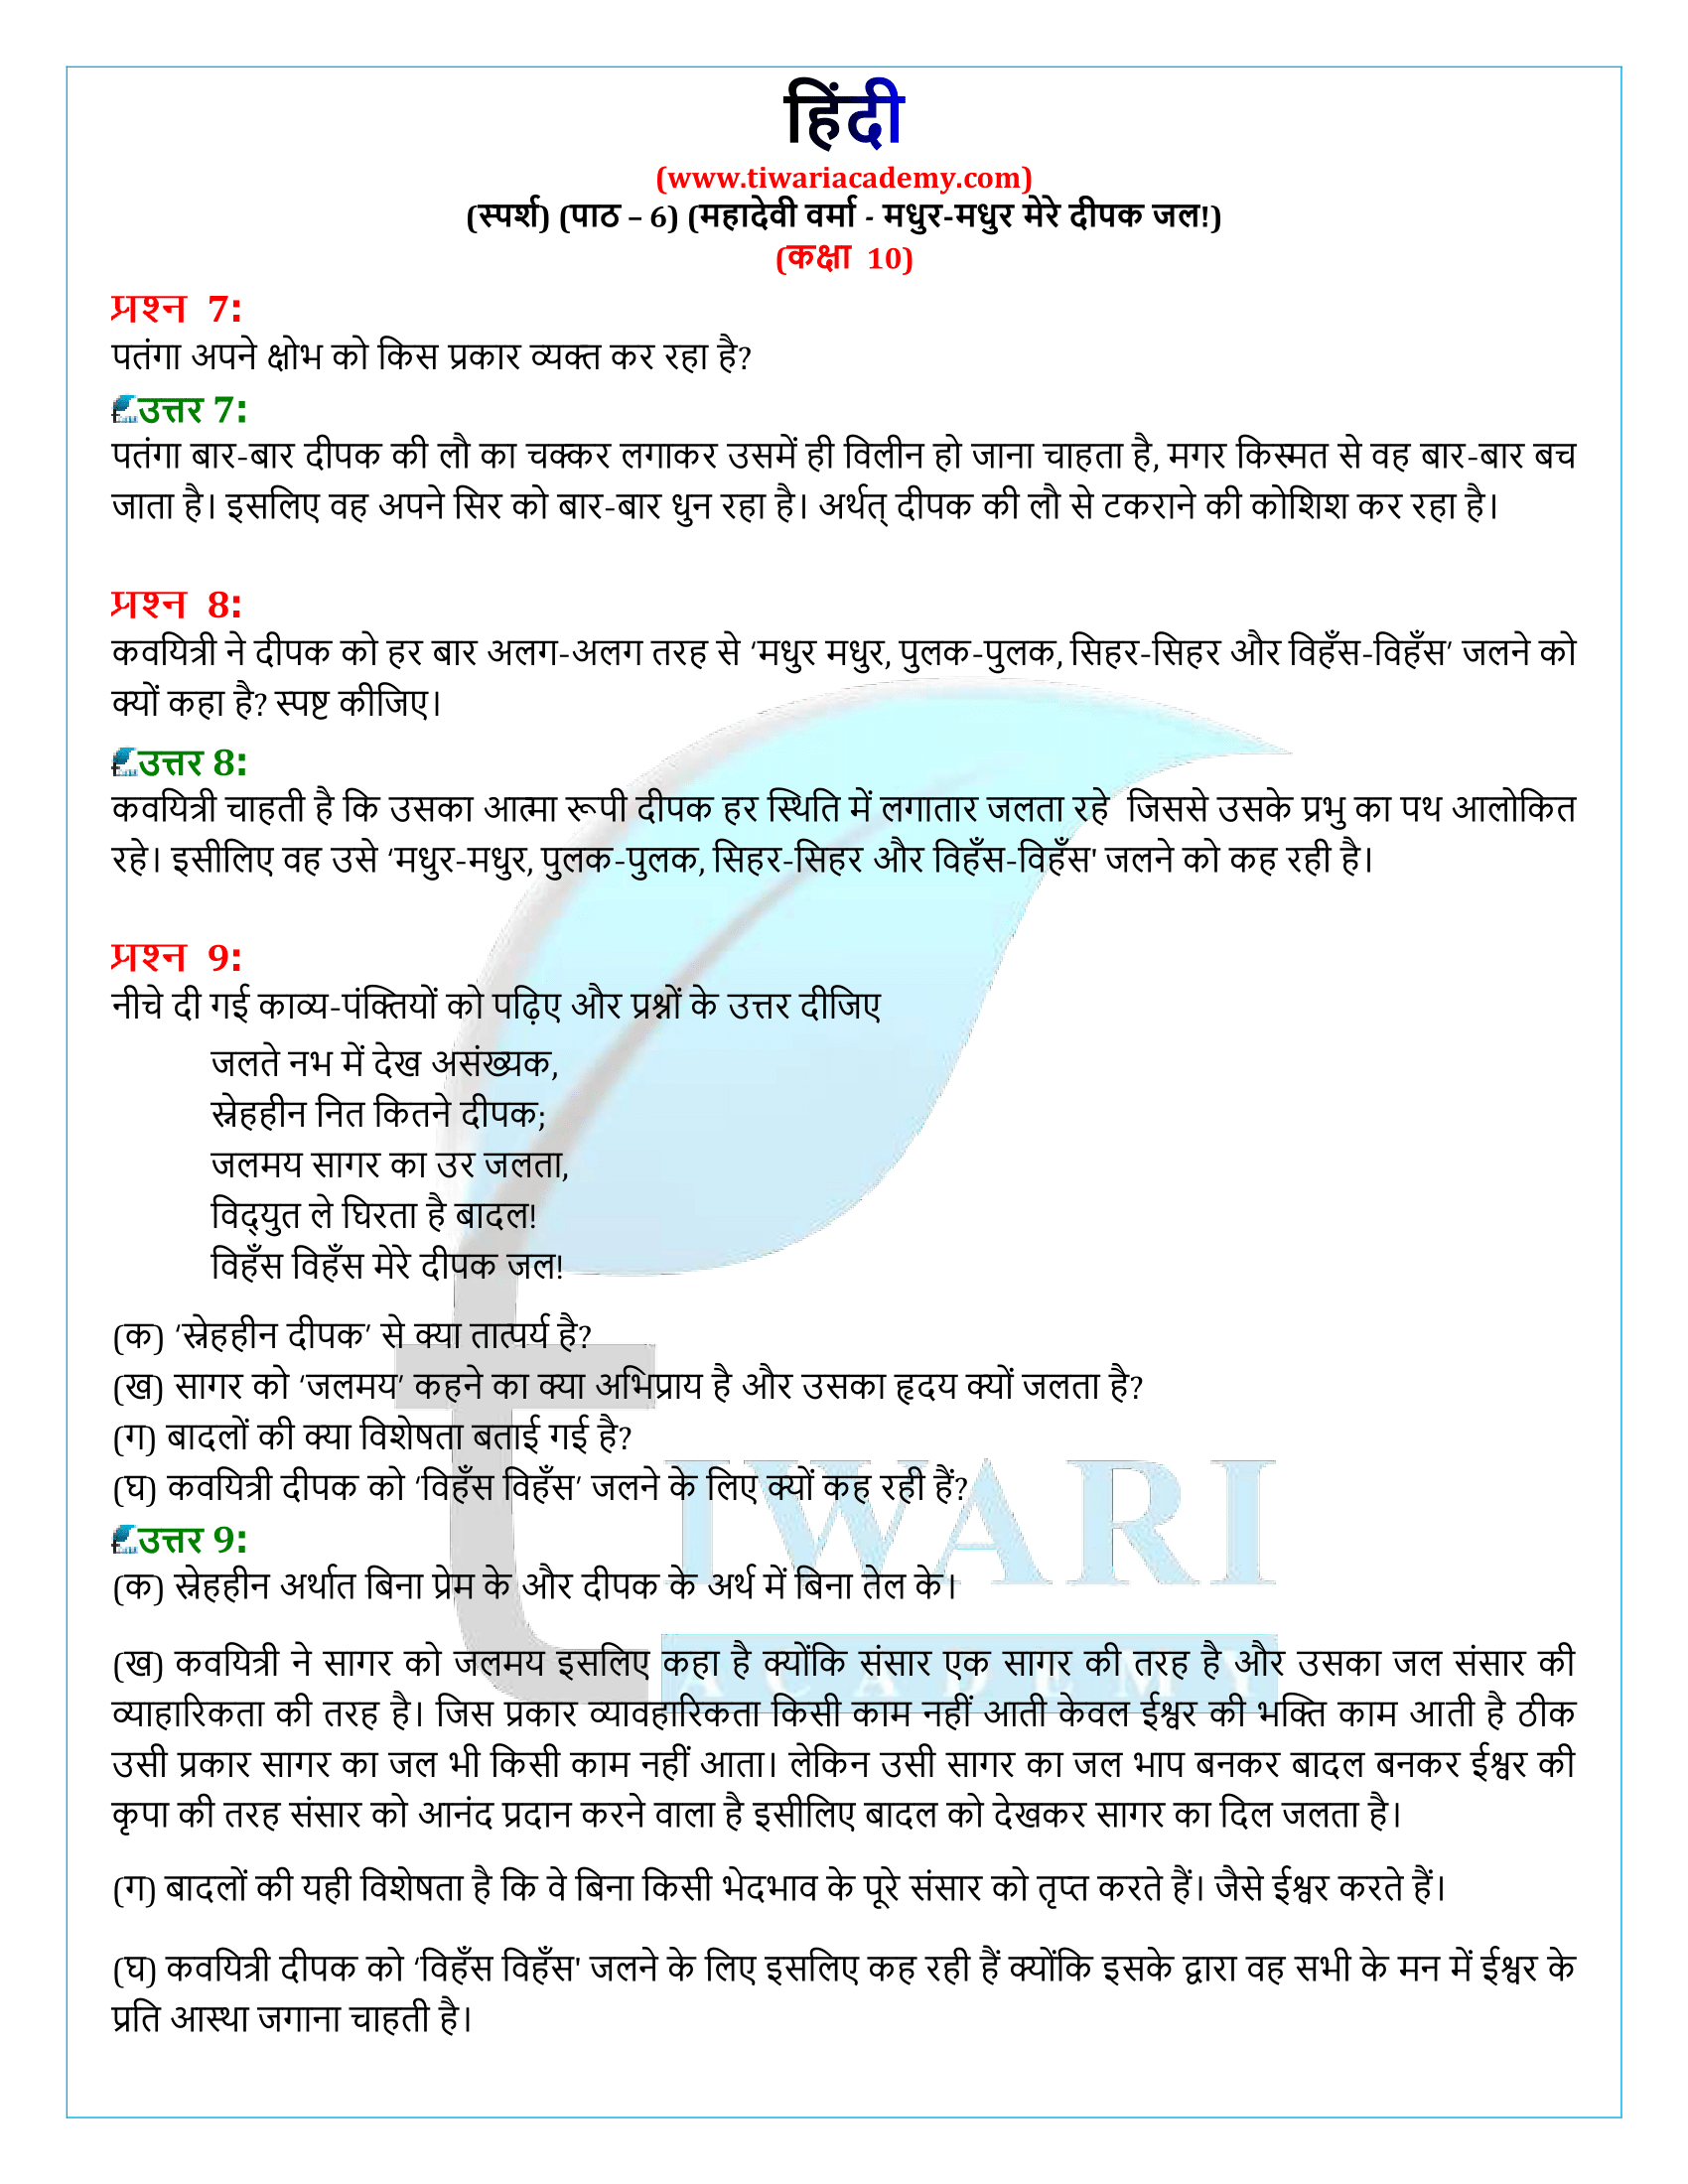 कक्षा 10 हिंदी स्पर्श अध्याय 6 अभ्यास के हल